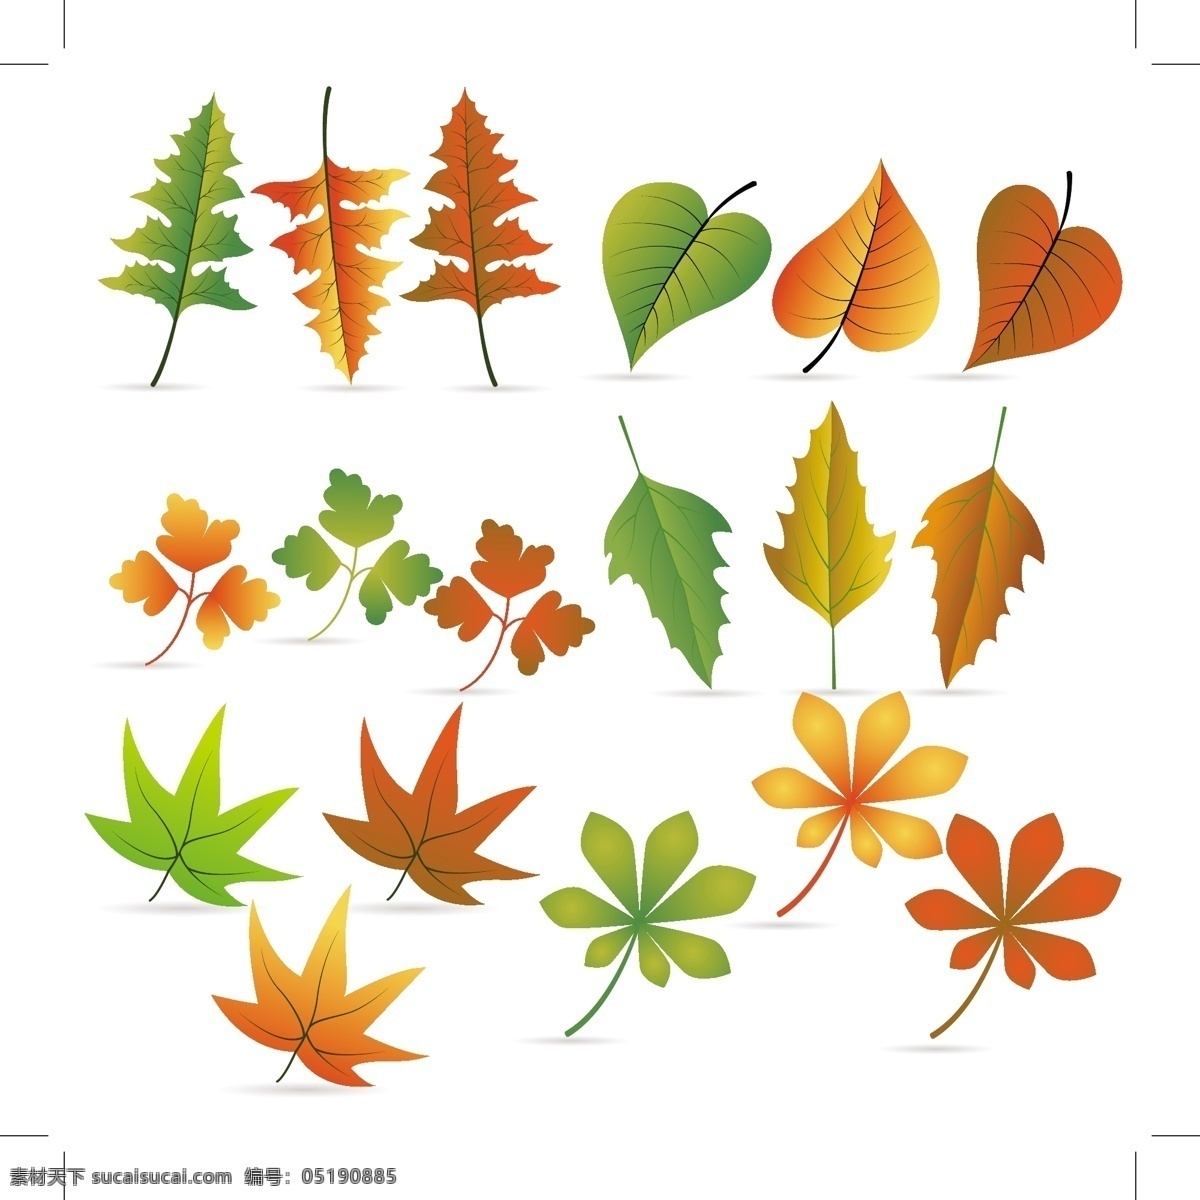 多种 树叶 矢量 橙色 枫叶 环保 绿叶 矢量素材 梧桐叶 白树叶 矢量图 其他矢量图